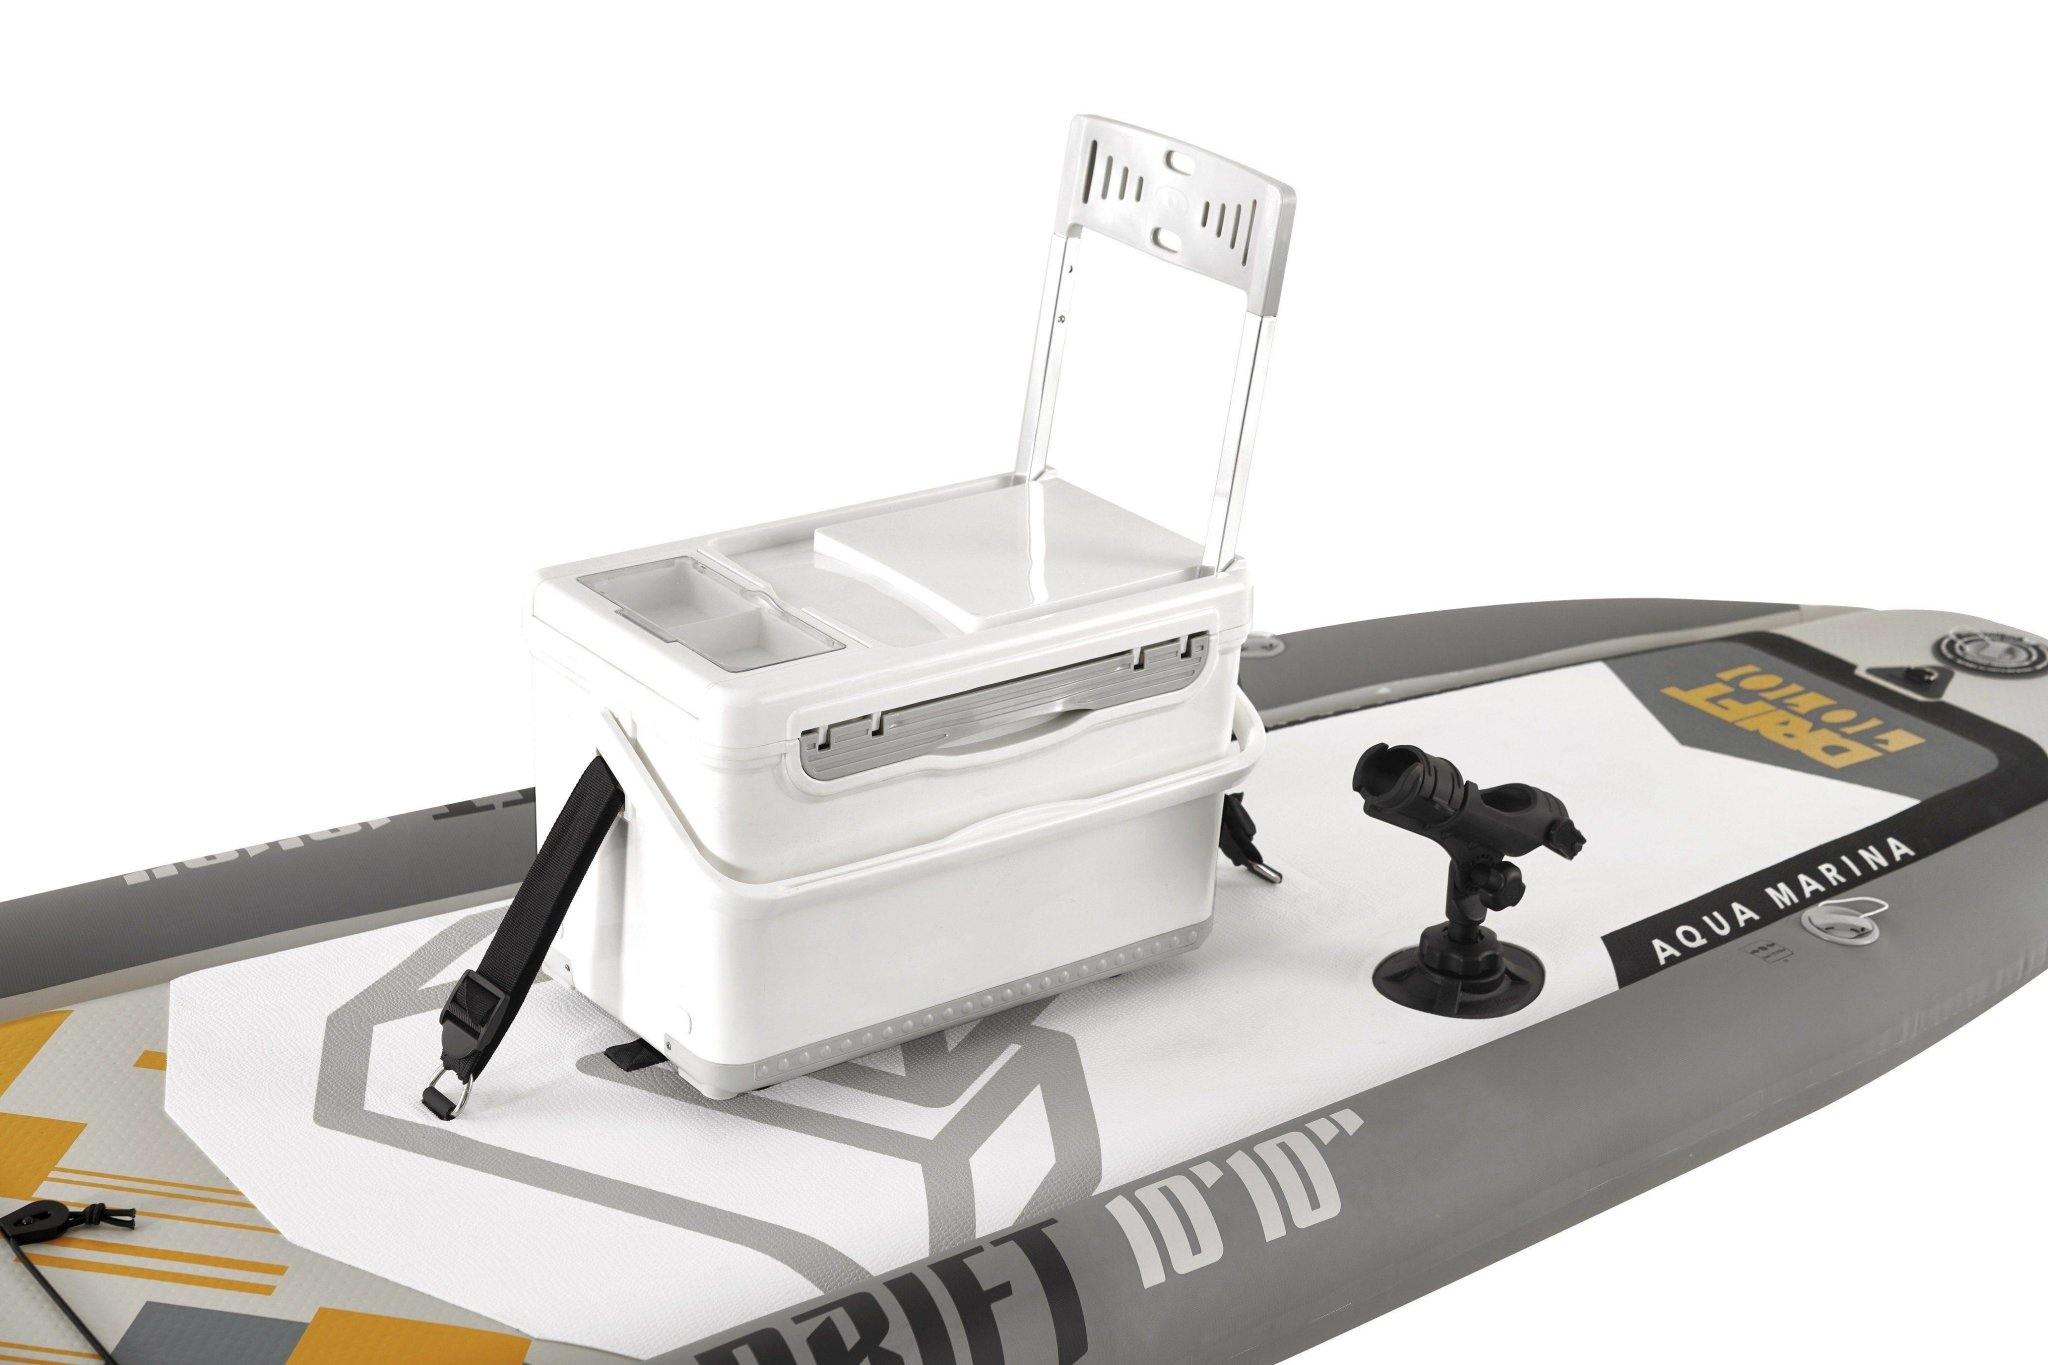 Drift Fishing iSUP Paddle Board - Dti Direct USA